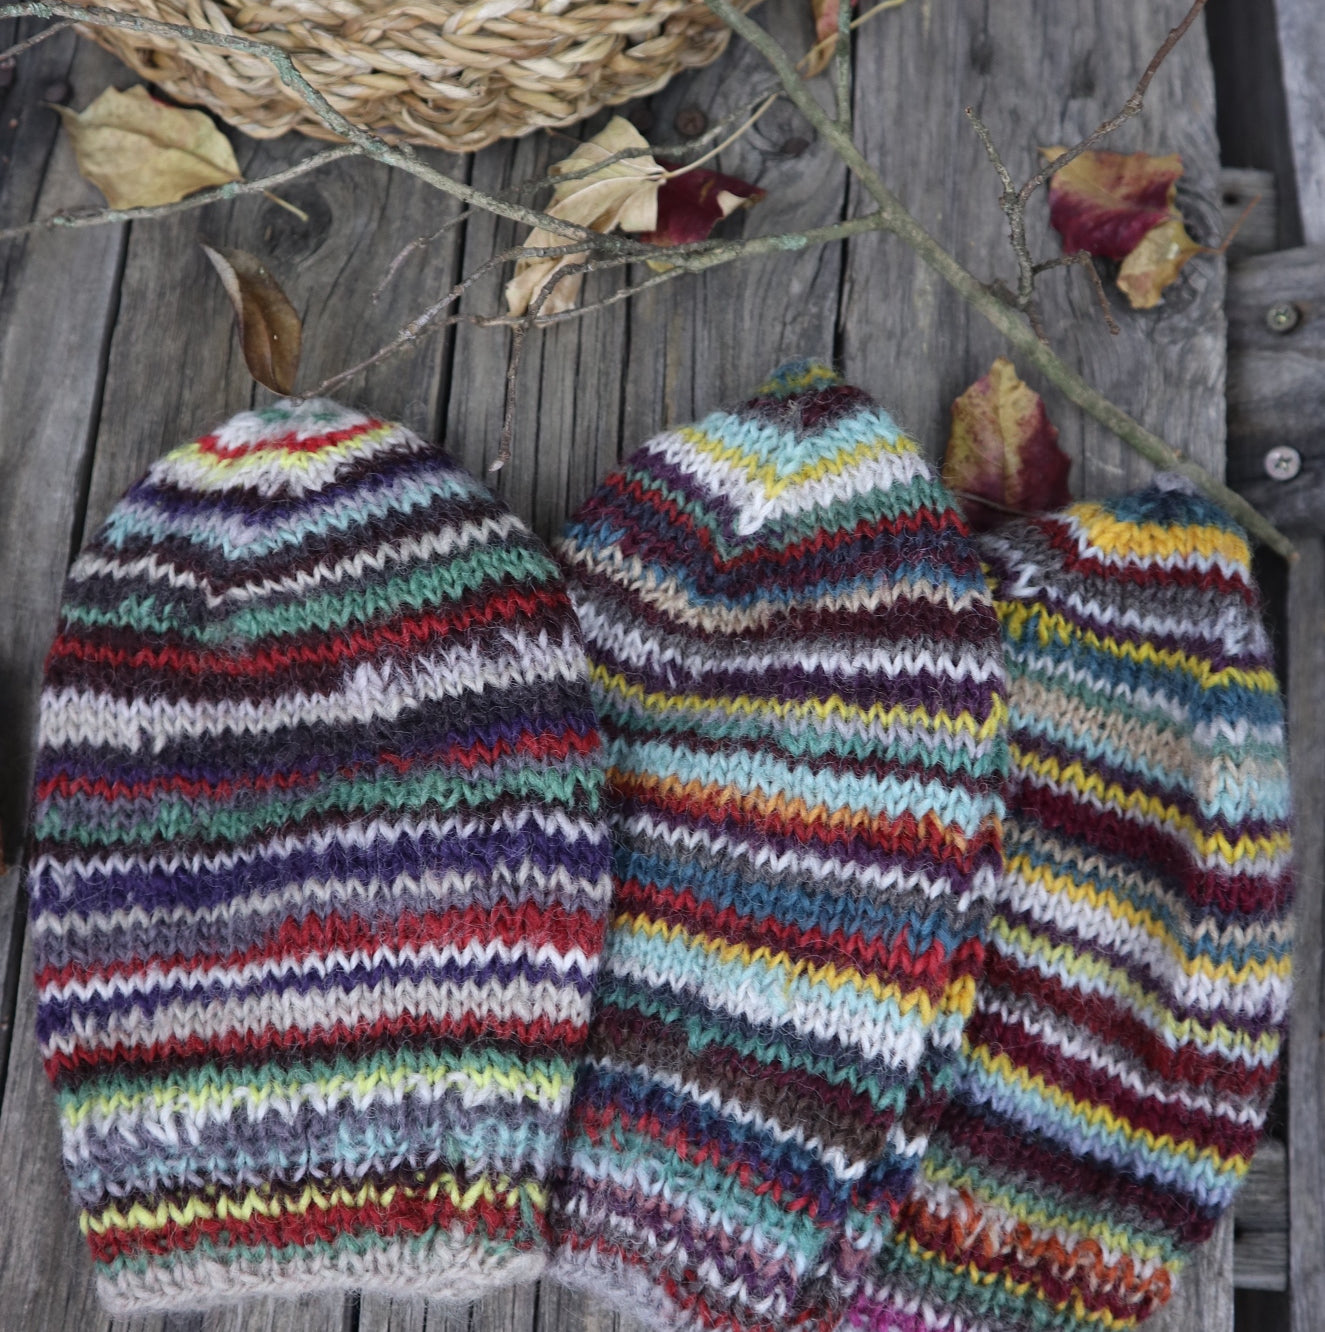 Fair Trade Ethical Woollen Beanie in a Striped Multi Coloured Design